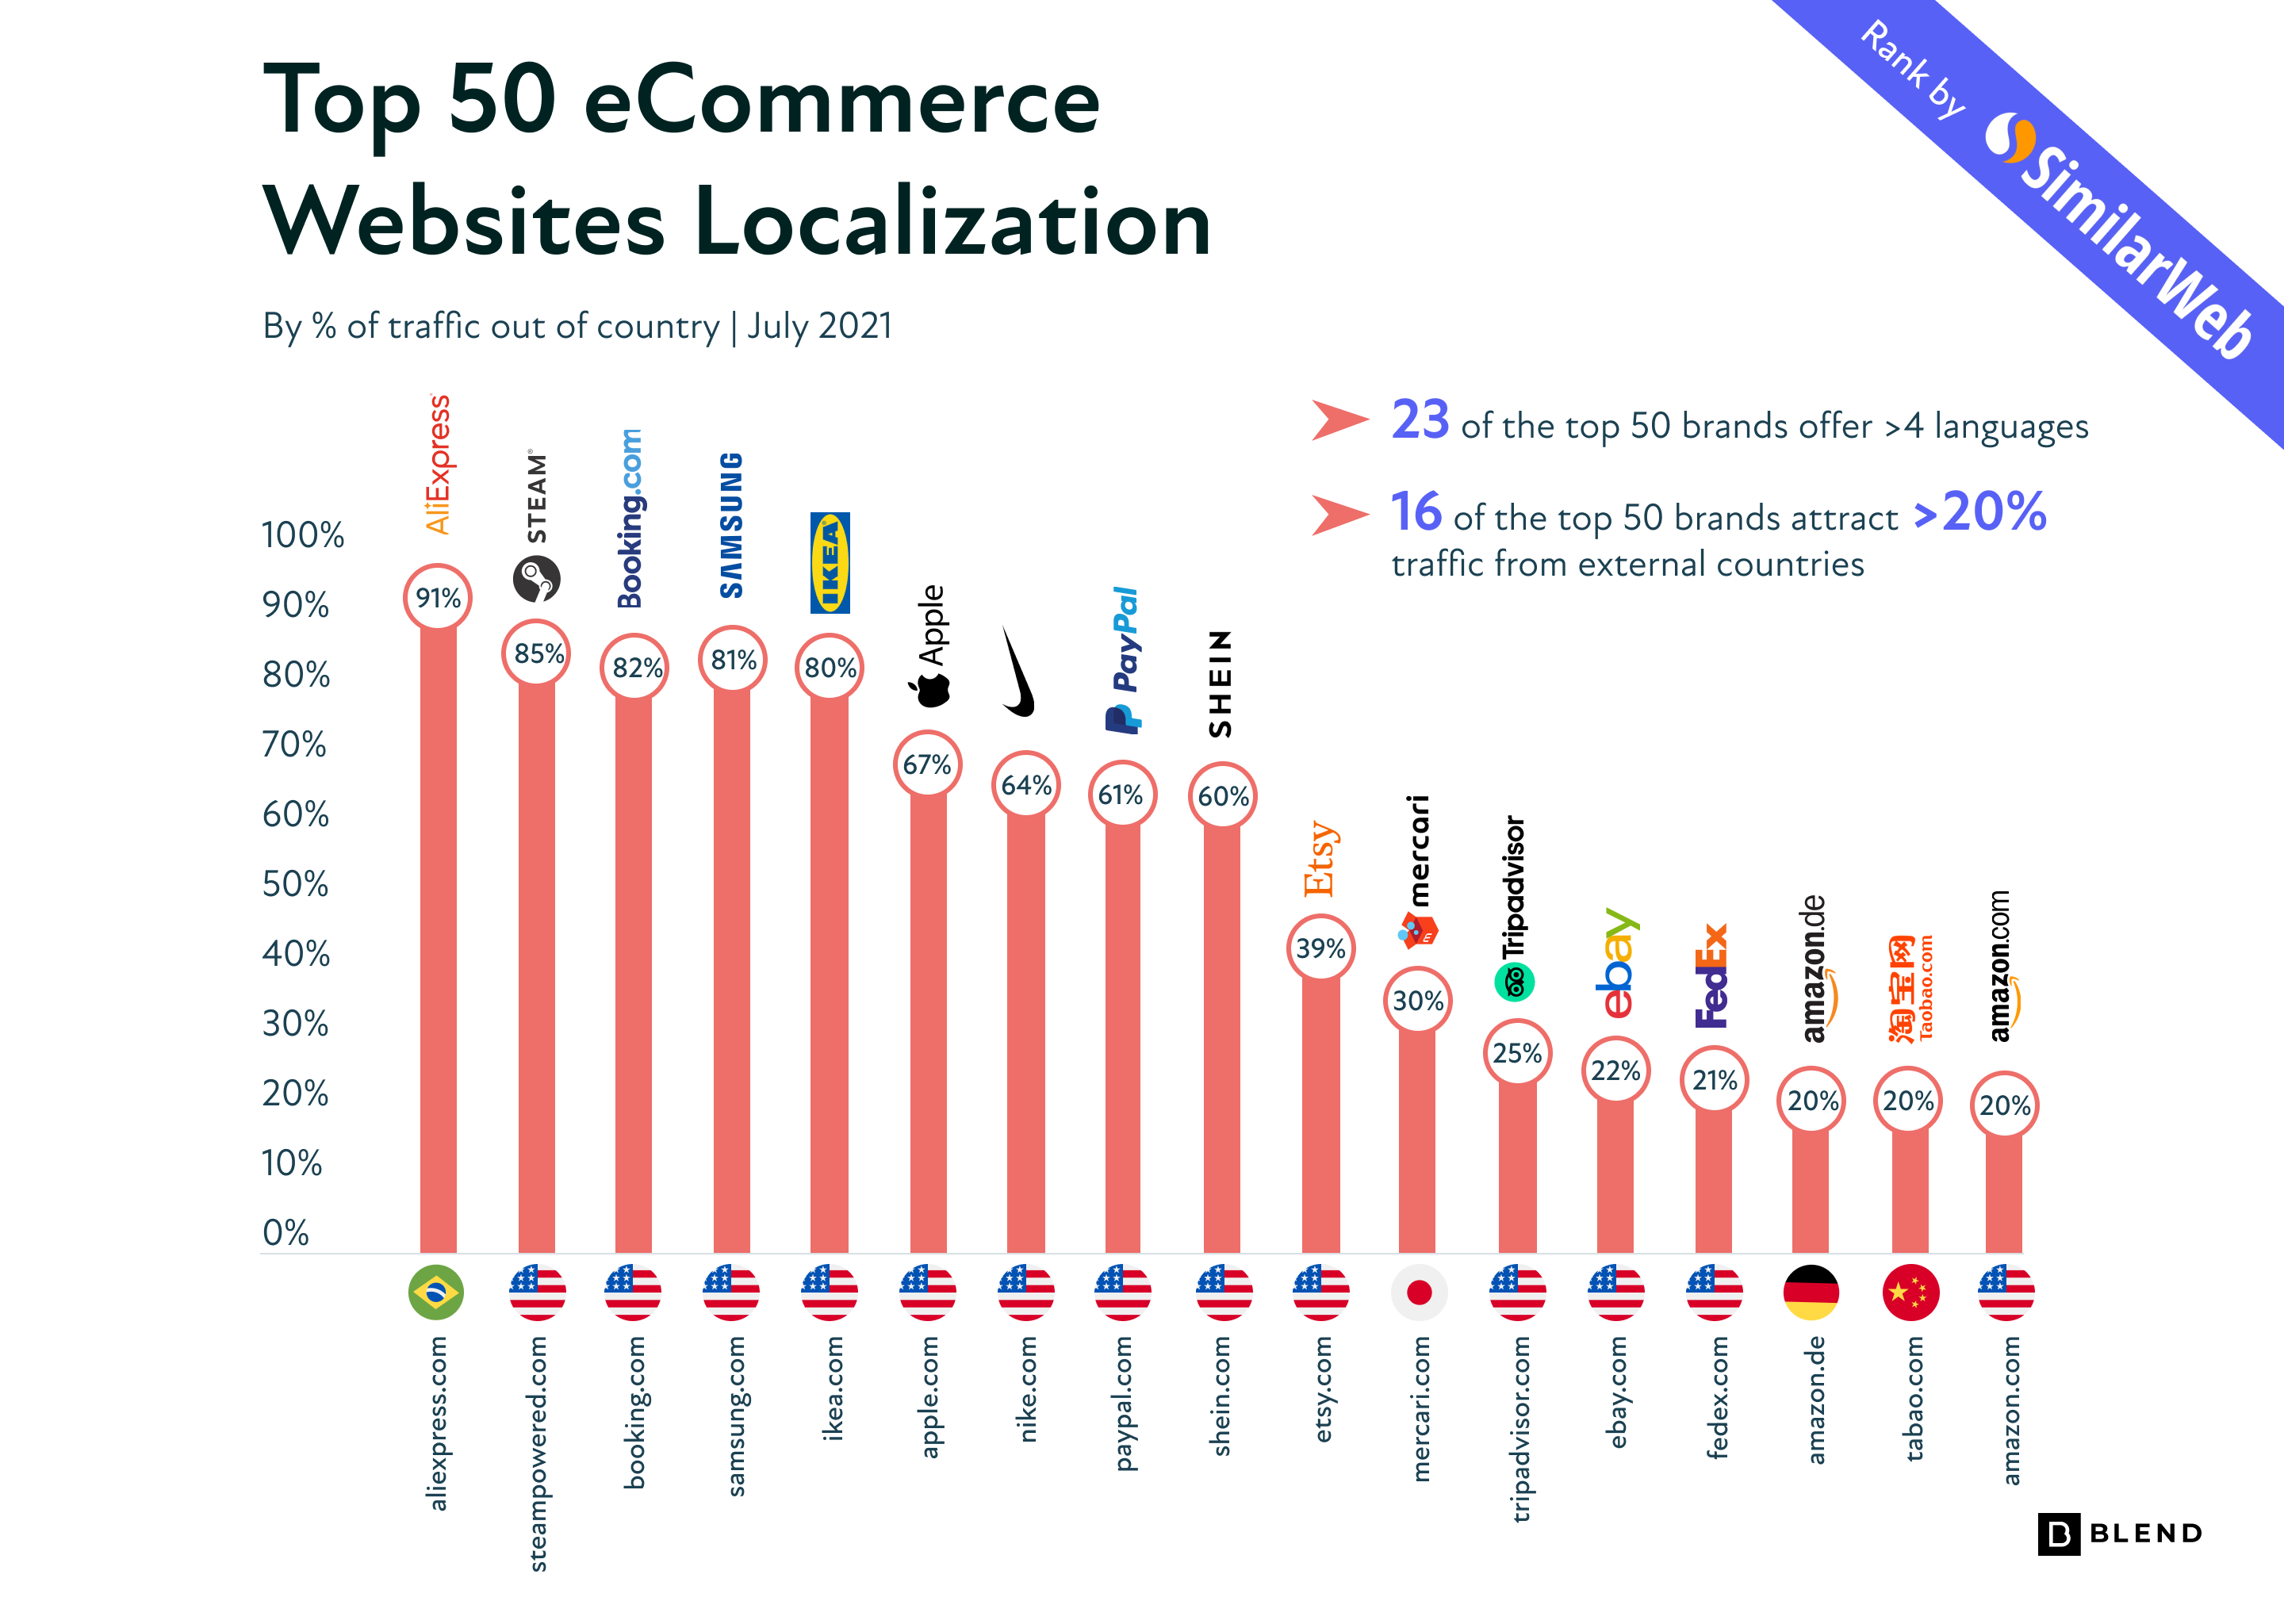 Les 50 principaux sites de commerce électronique utilisent quatre langues ou plus, signalant une croissance de la localisation pour les marques